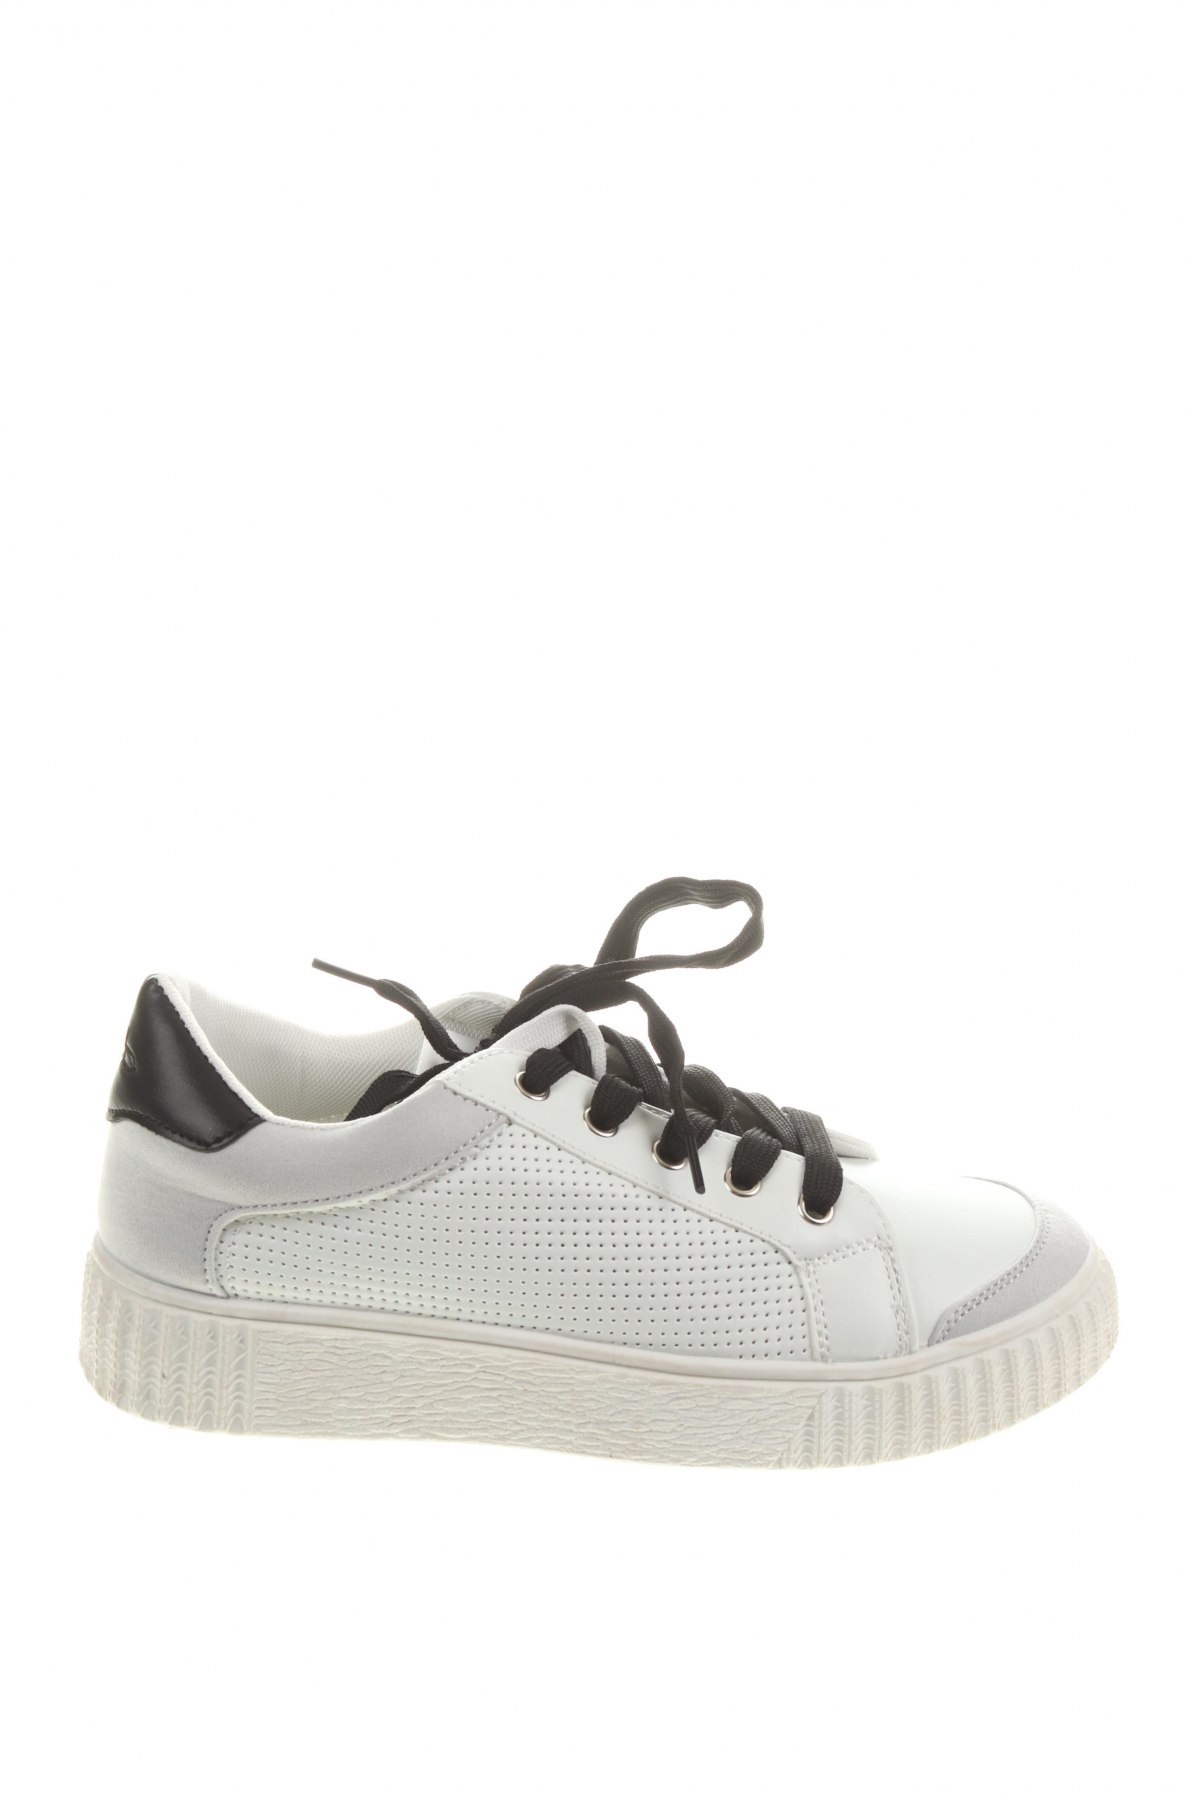 Γυναικεία παπούτσια LPB Les P'tites Bombes, Μέγεθος 39, Χρώμα Λευκό, Δερματίνη, κλωστοϋφαντουργικά προϊόντα, Τιμή 22,81 €